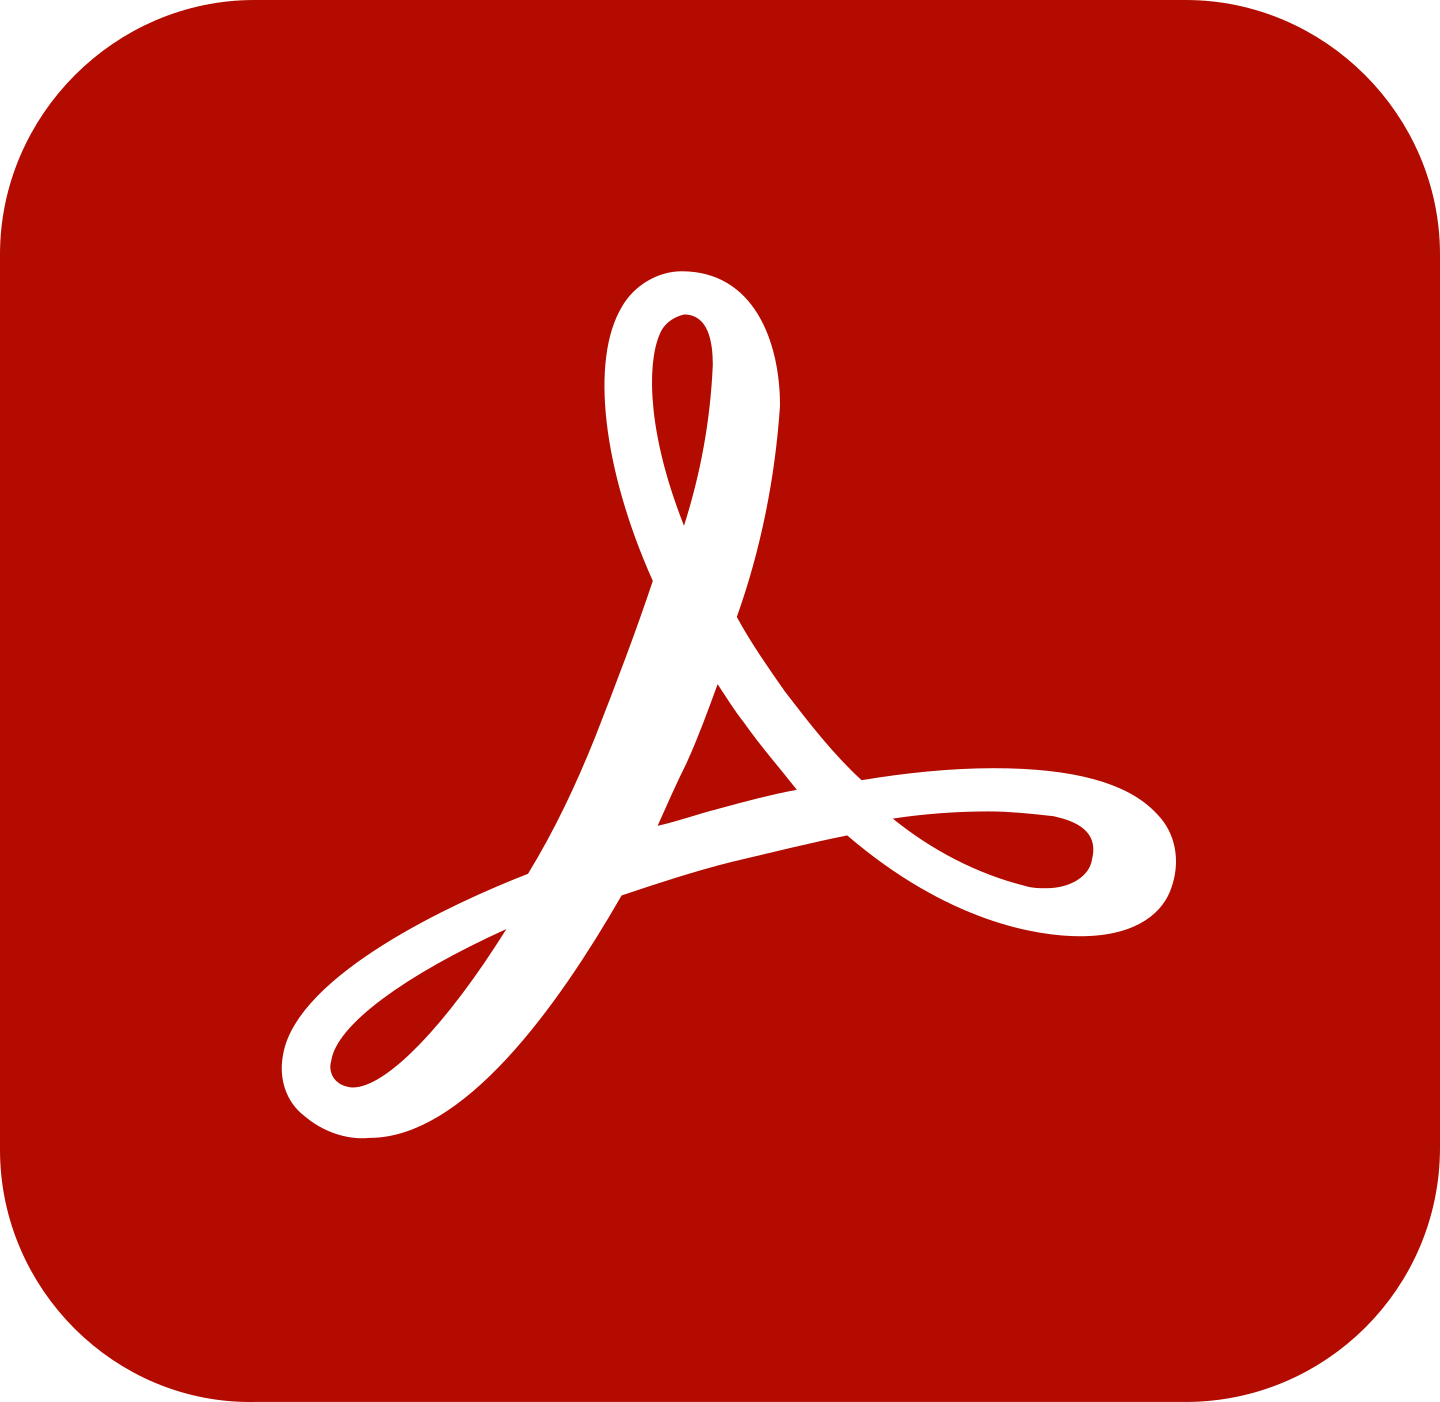 adobe acrobat reader logo 2 - Adobe Acrobat Reader Logo